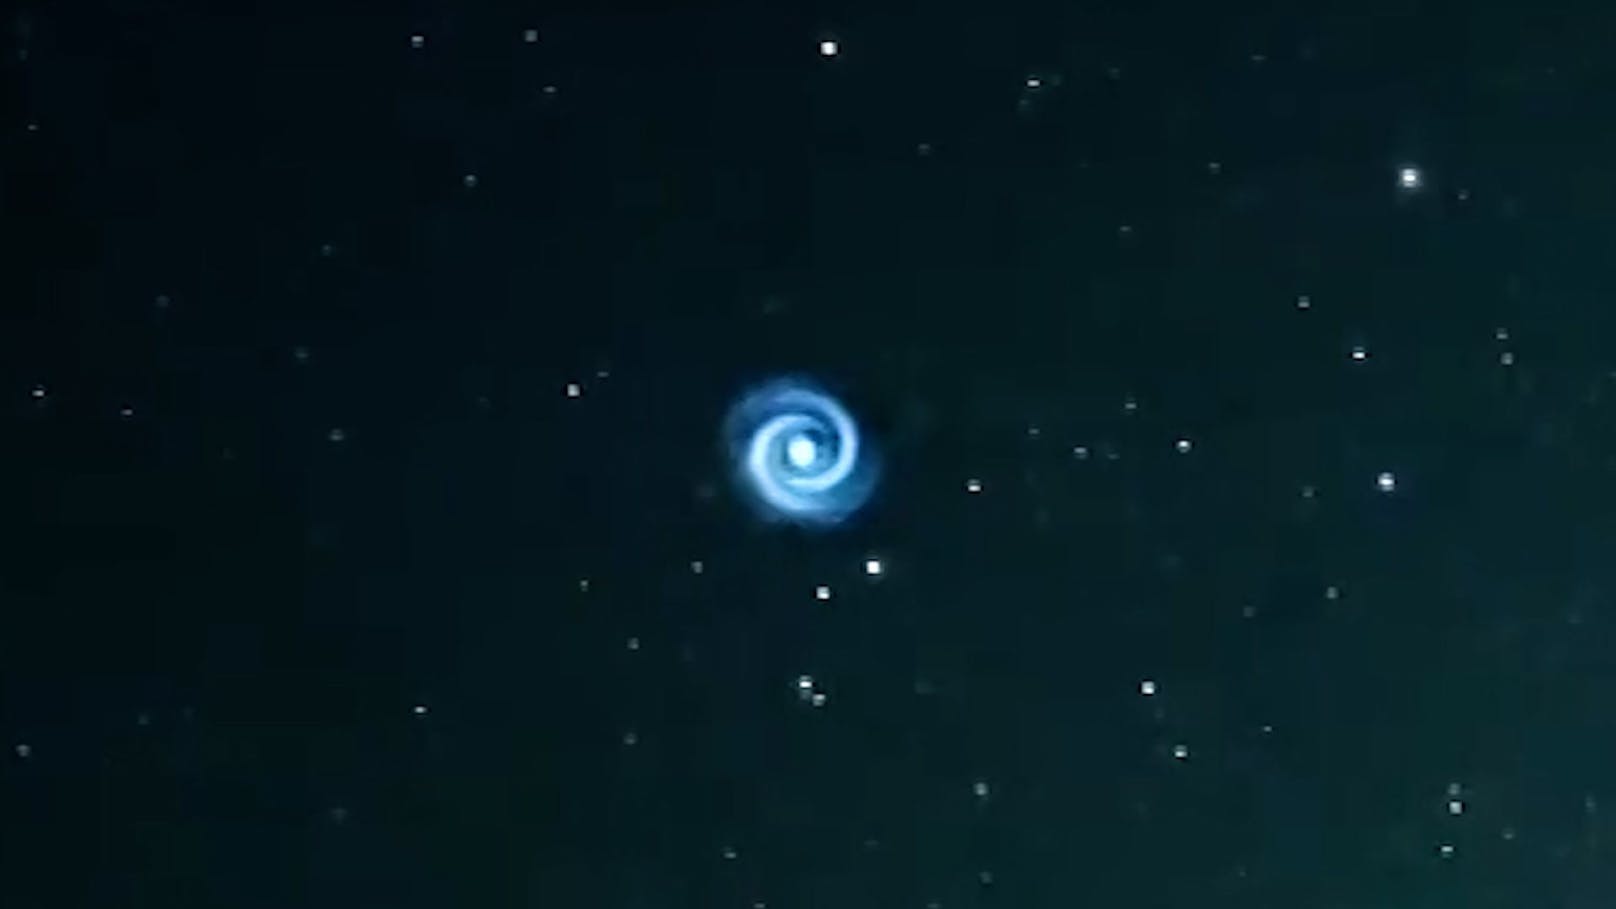 Mysteriöse Spirale am Nachthimmel gesichtet